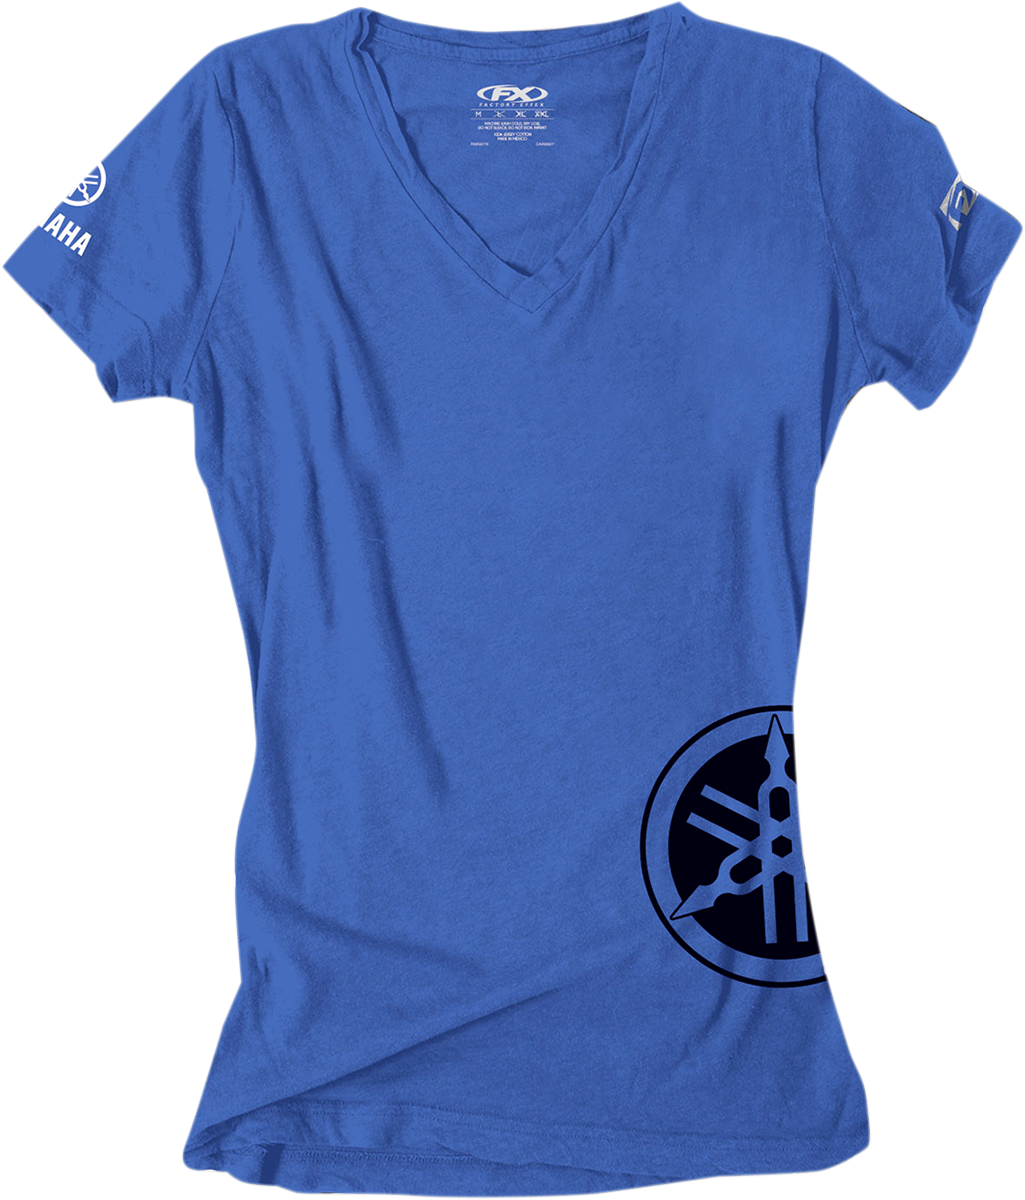 FACTORY EFFEX Camiseta Yamaha para mujer - Azul real - Pequeña 17-87240 